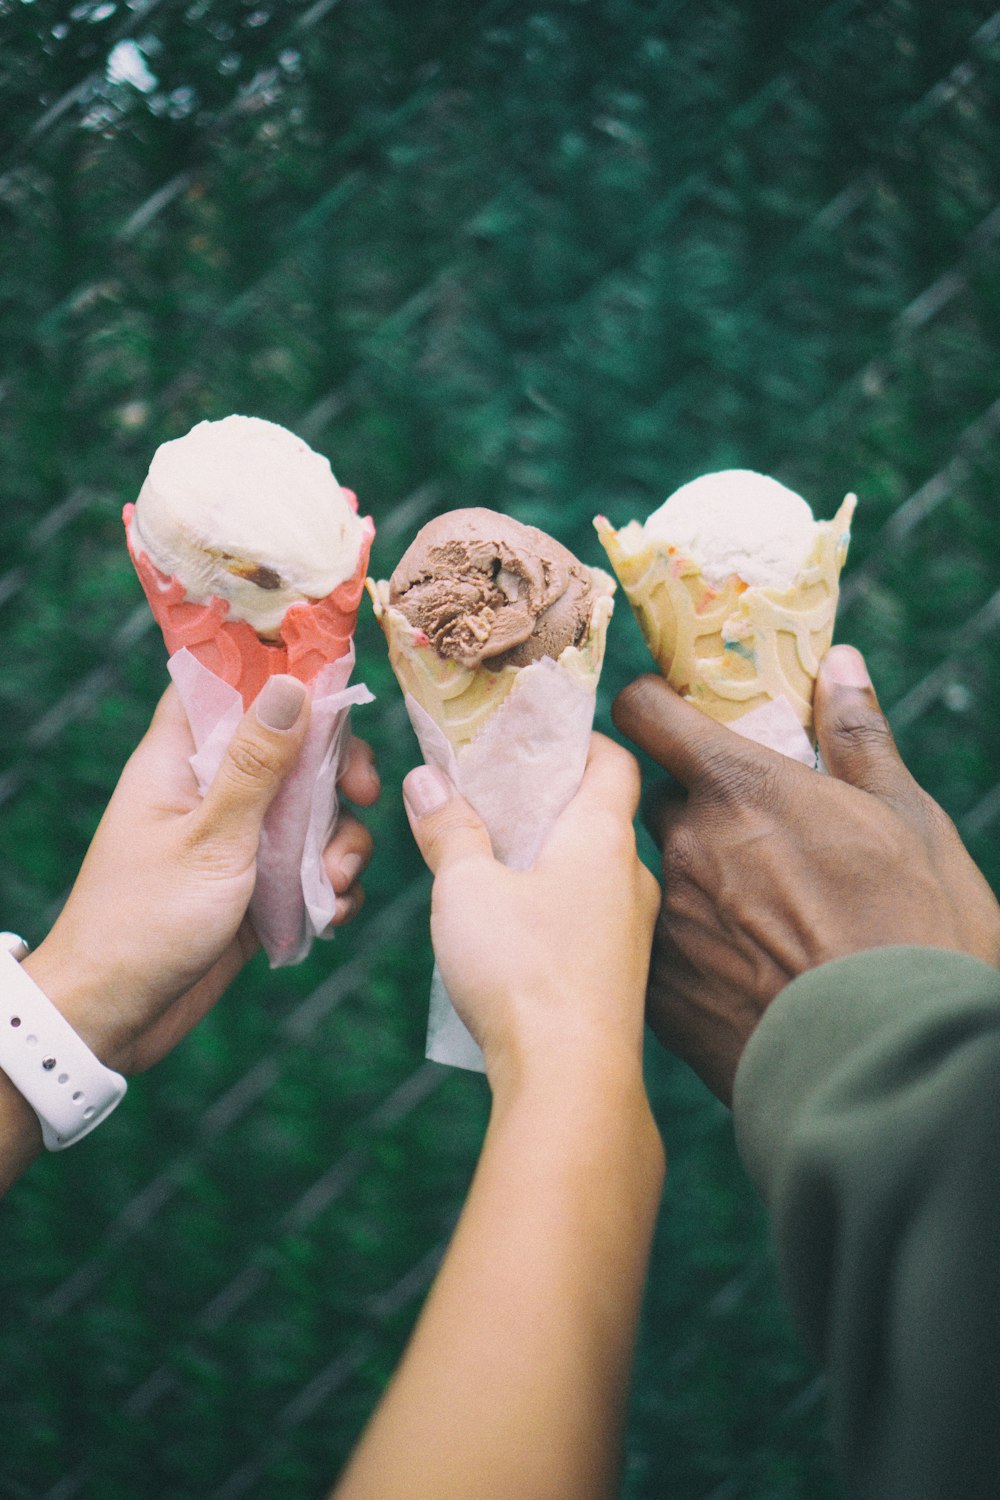 três pessoas segurando casquinhas de sorvete nas mãos